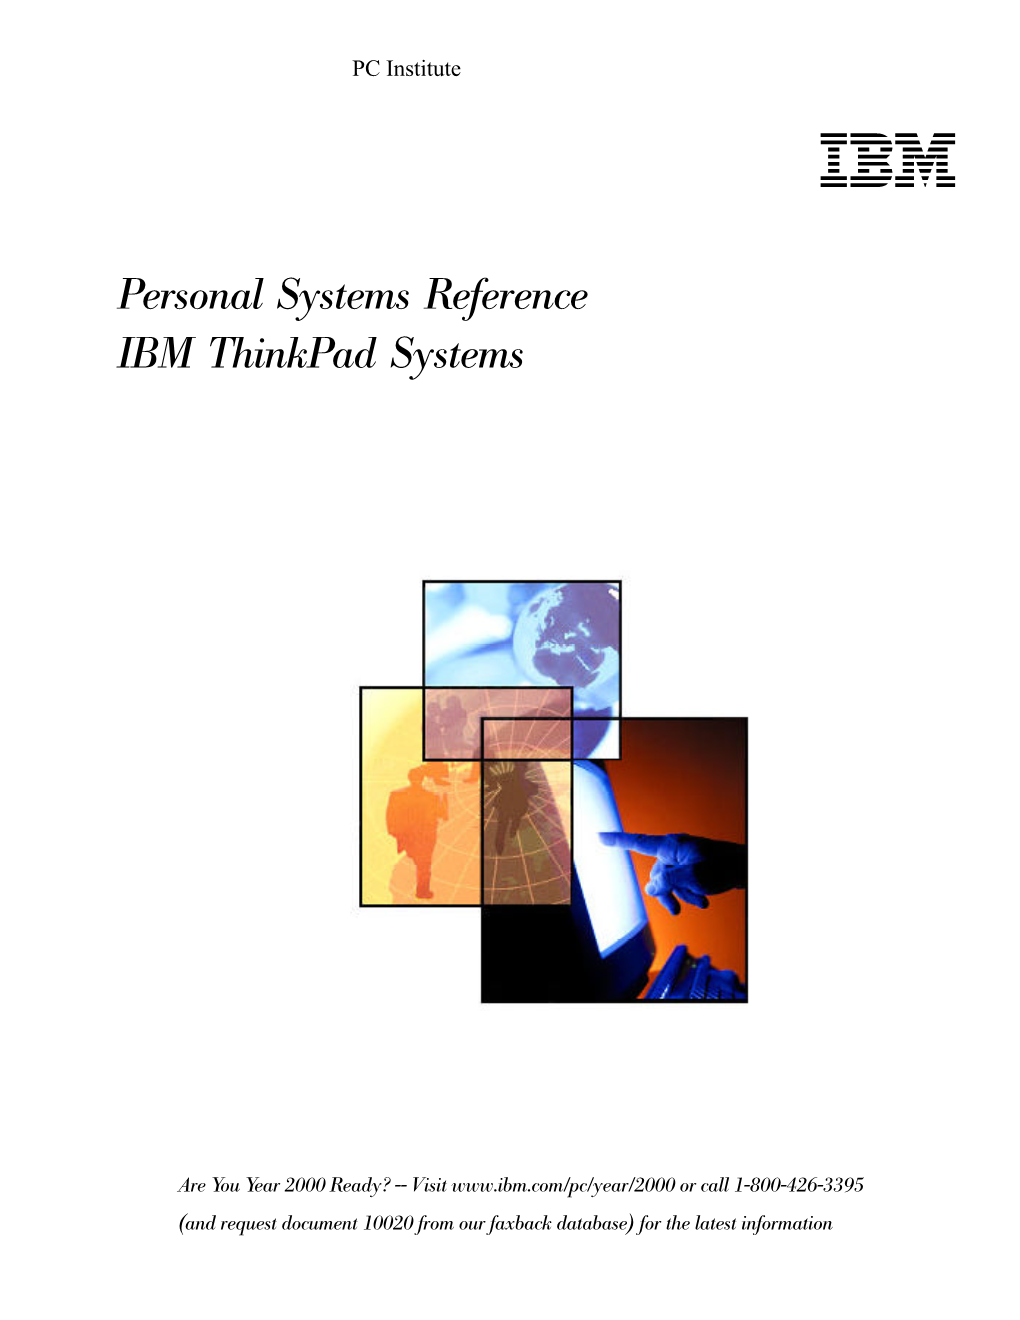 IBM Thinkpad Systems